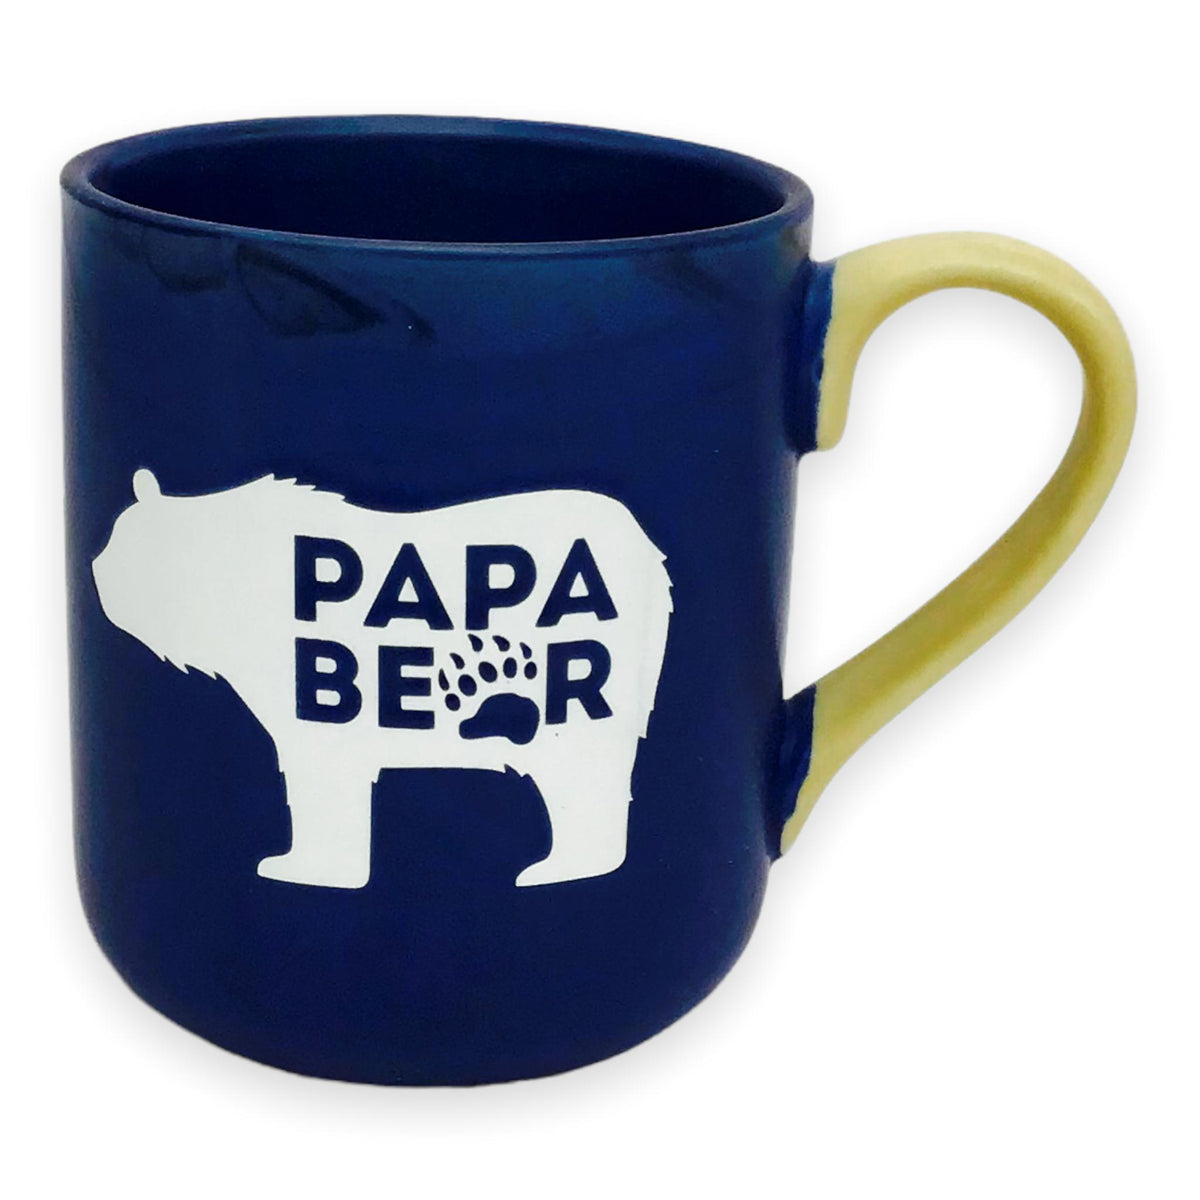 Papa Bear Coffee Mug, 18oz – Ceramic Coffee Mug with Papa Bear Needs a